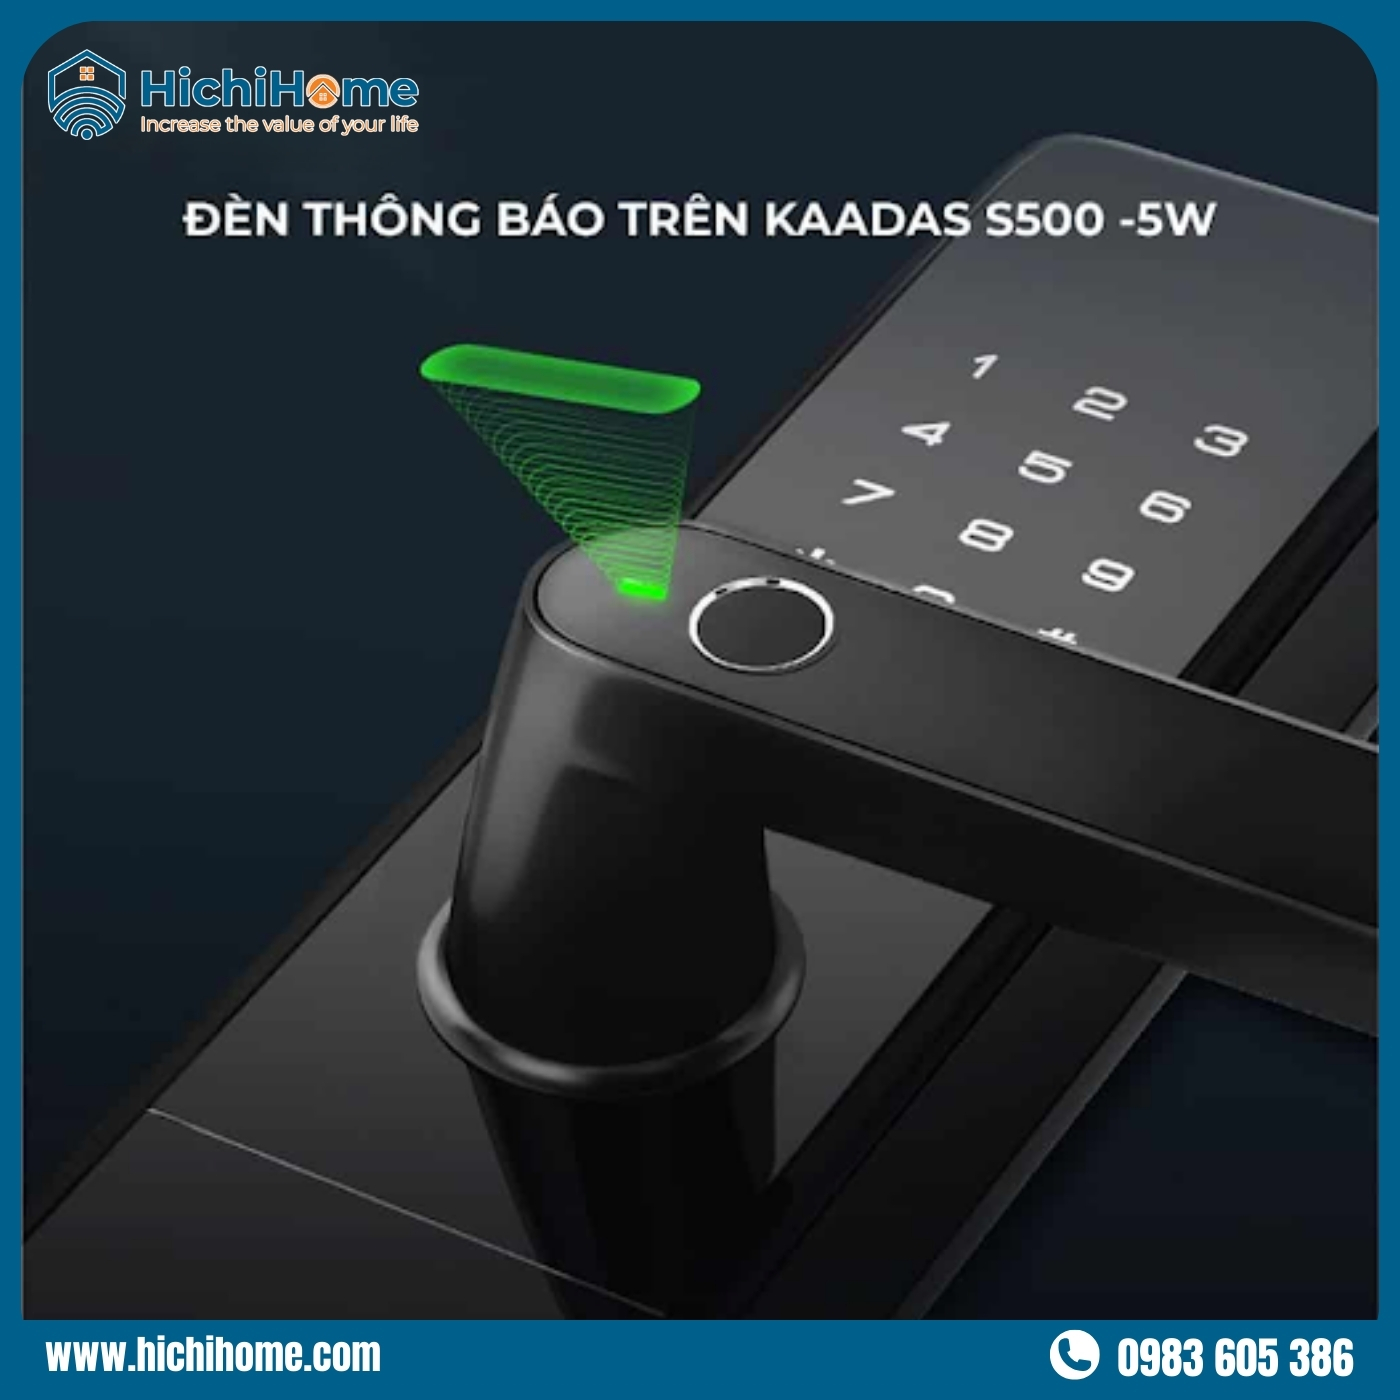 Kaadas S500-5W tích hợp nhiều tính năng thông minh và tiện lợi